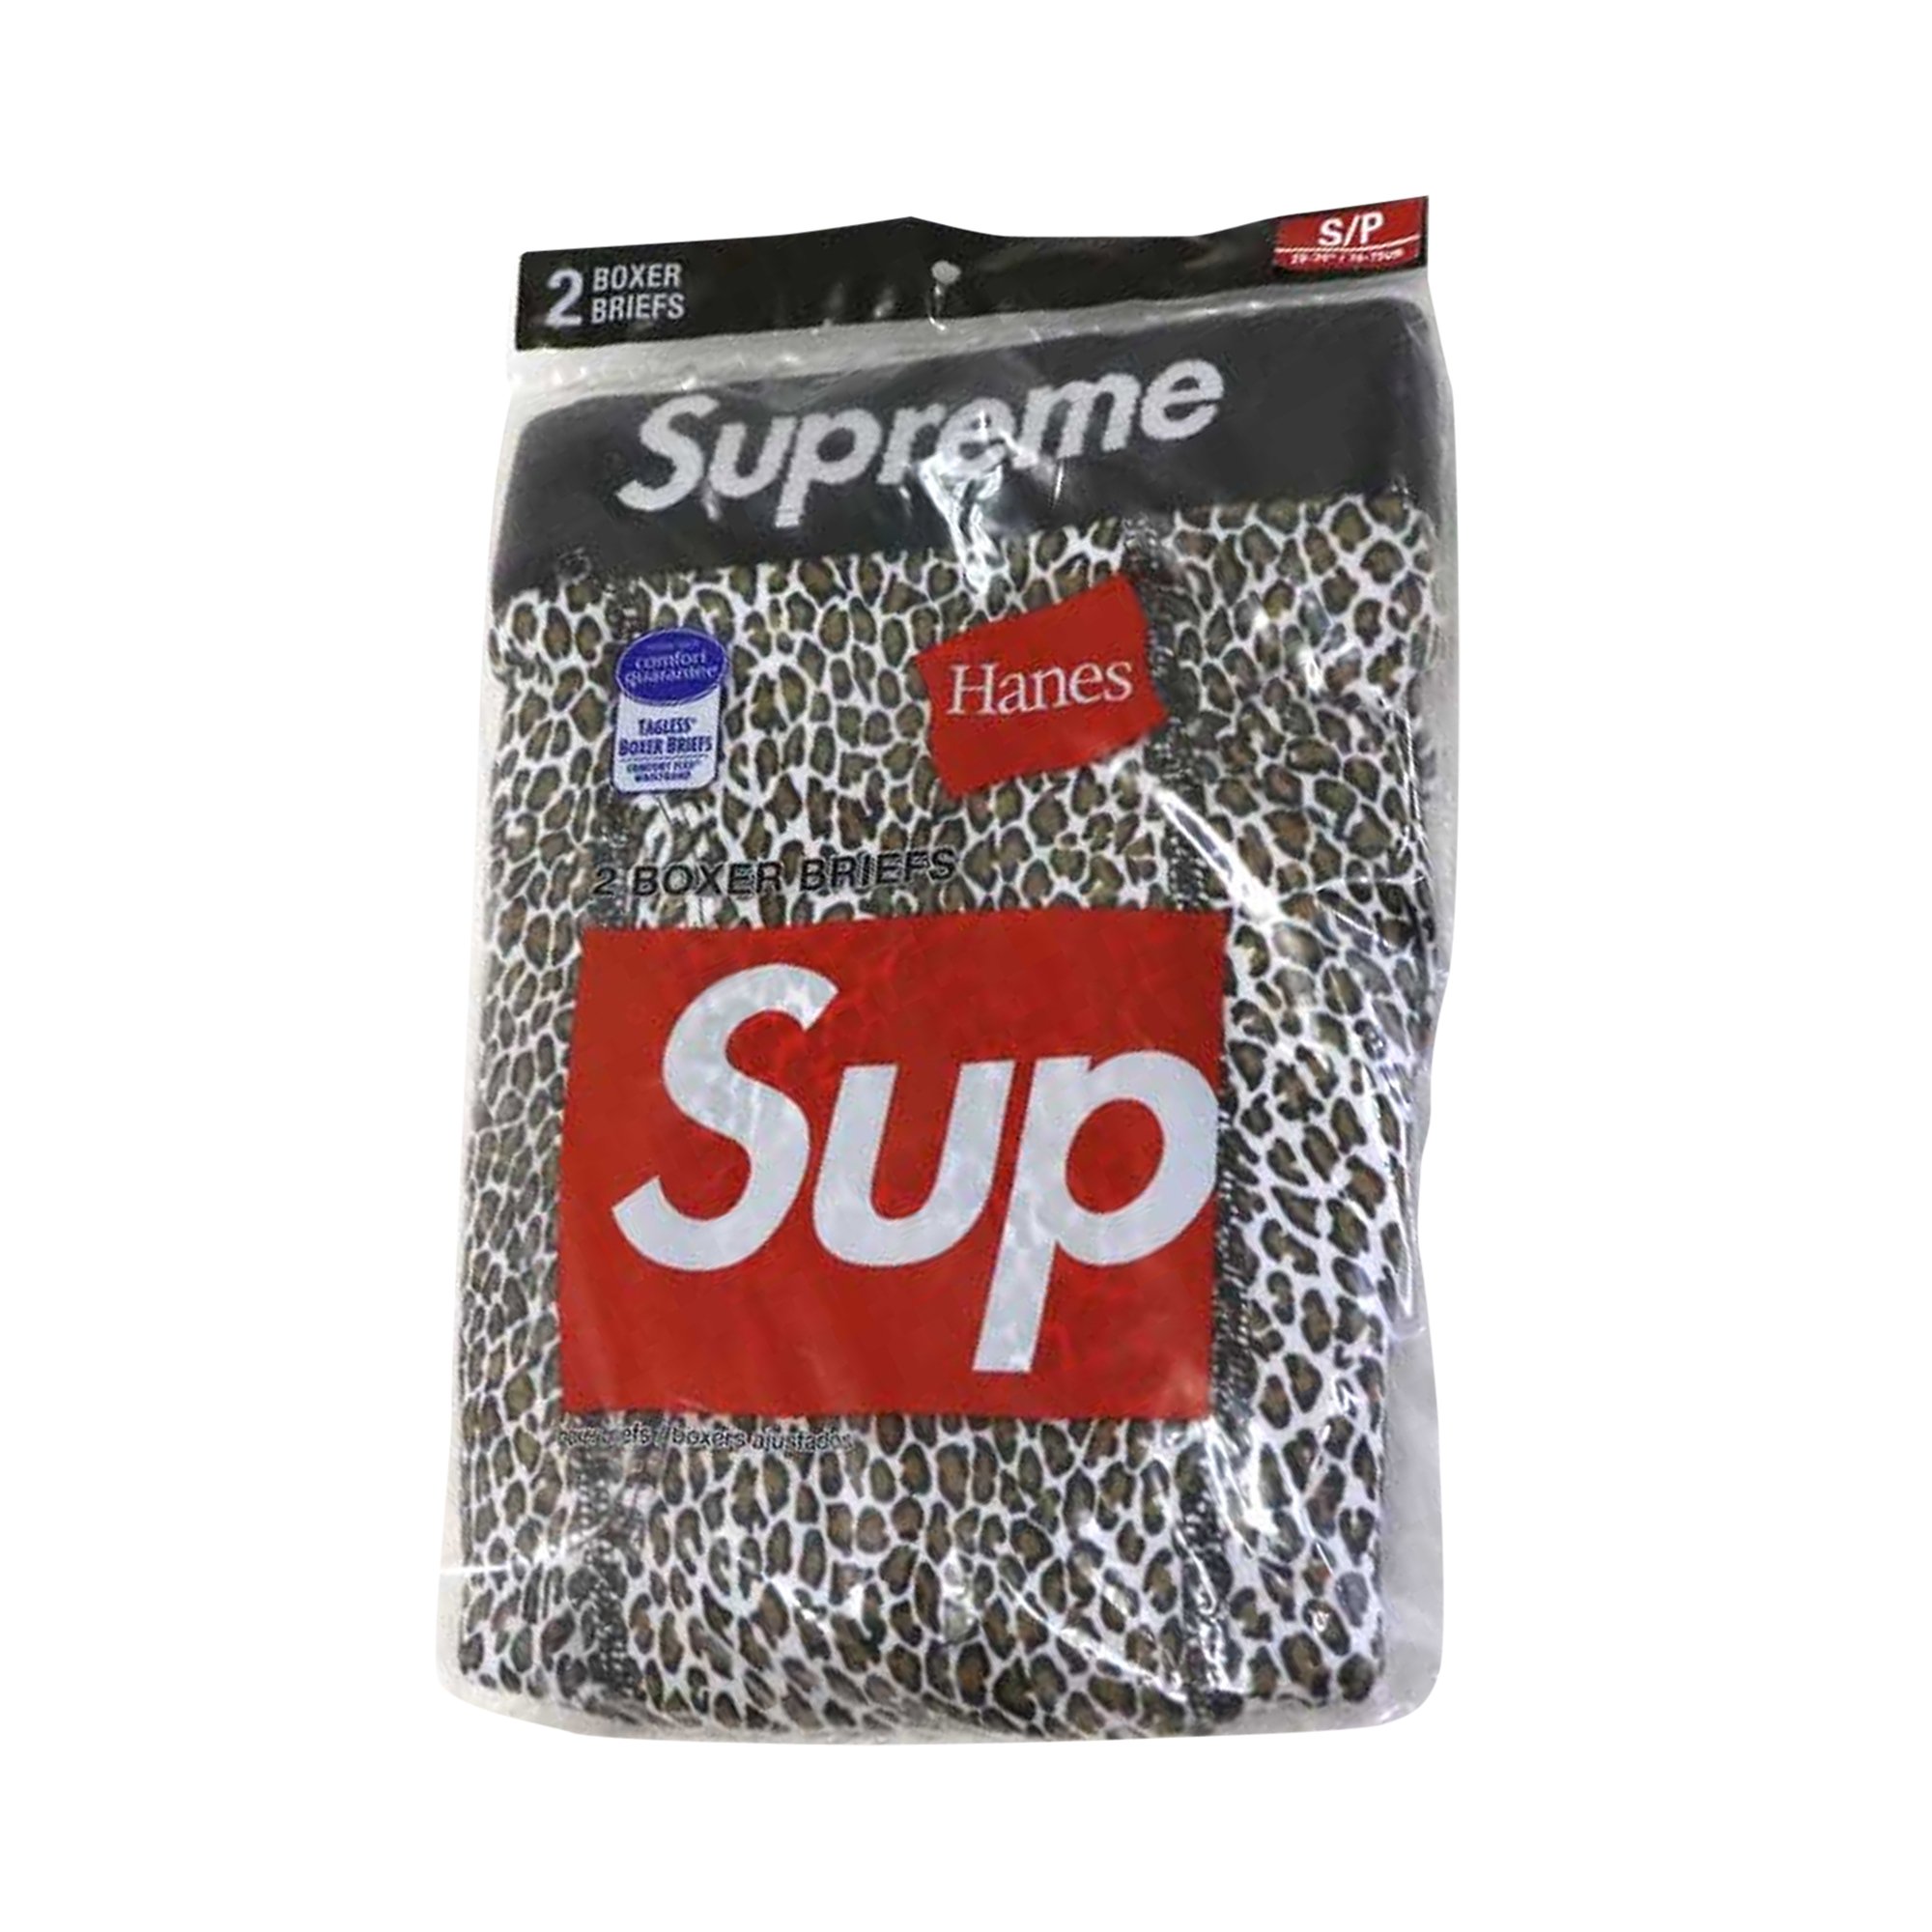 Buy Supreme x Hanes Leopard Boxer Briefs (2 Pack) 'Leopard